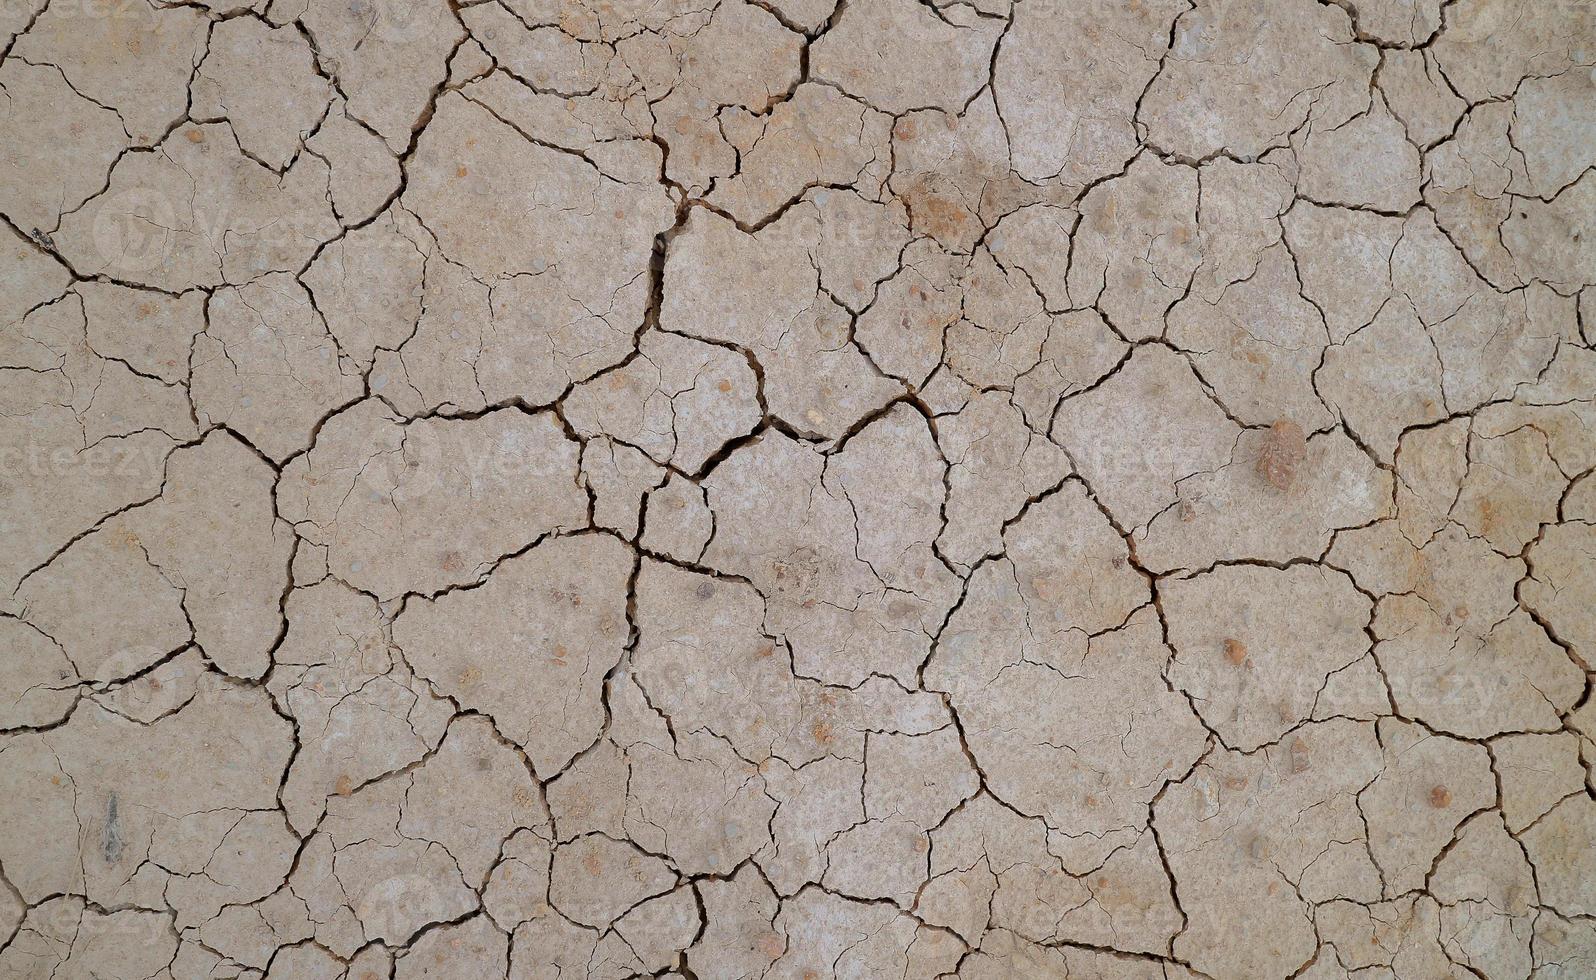 suelo agrietado debido a la sequía. la estación seca hace que el suelo se seque y se agriete foto